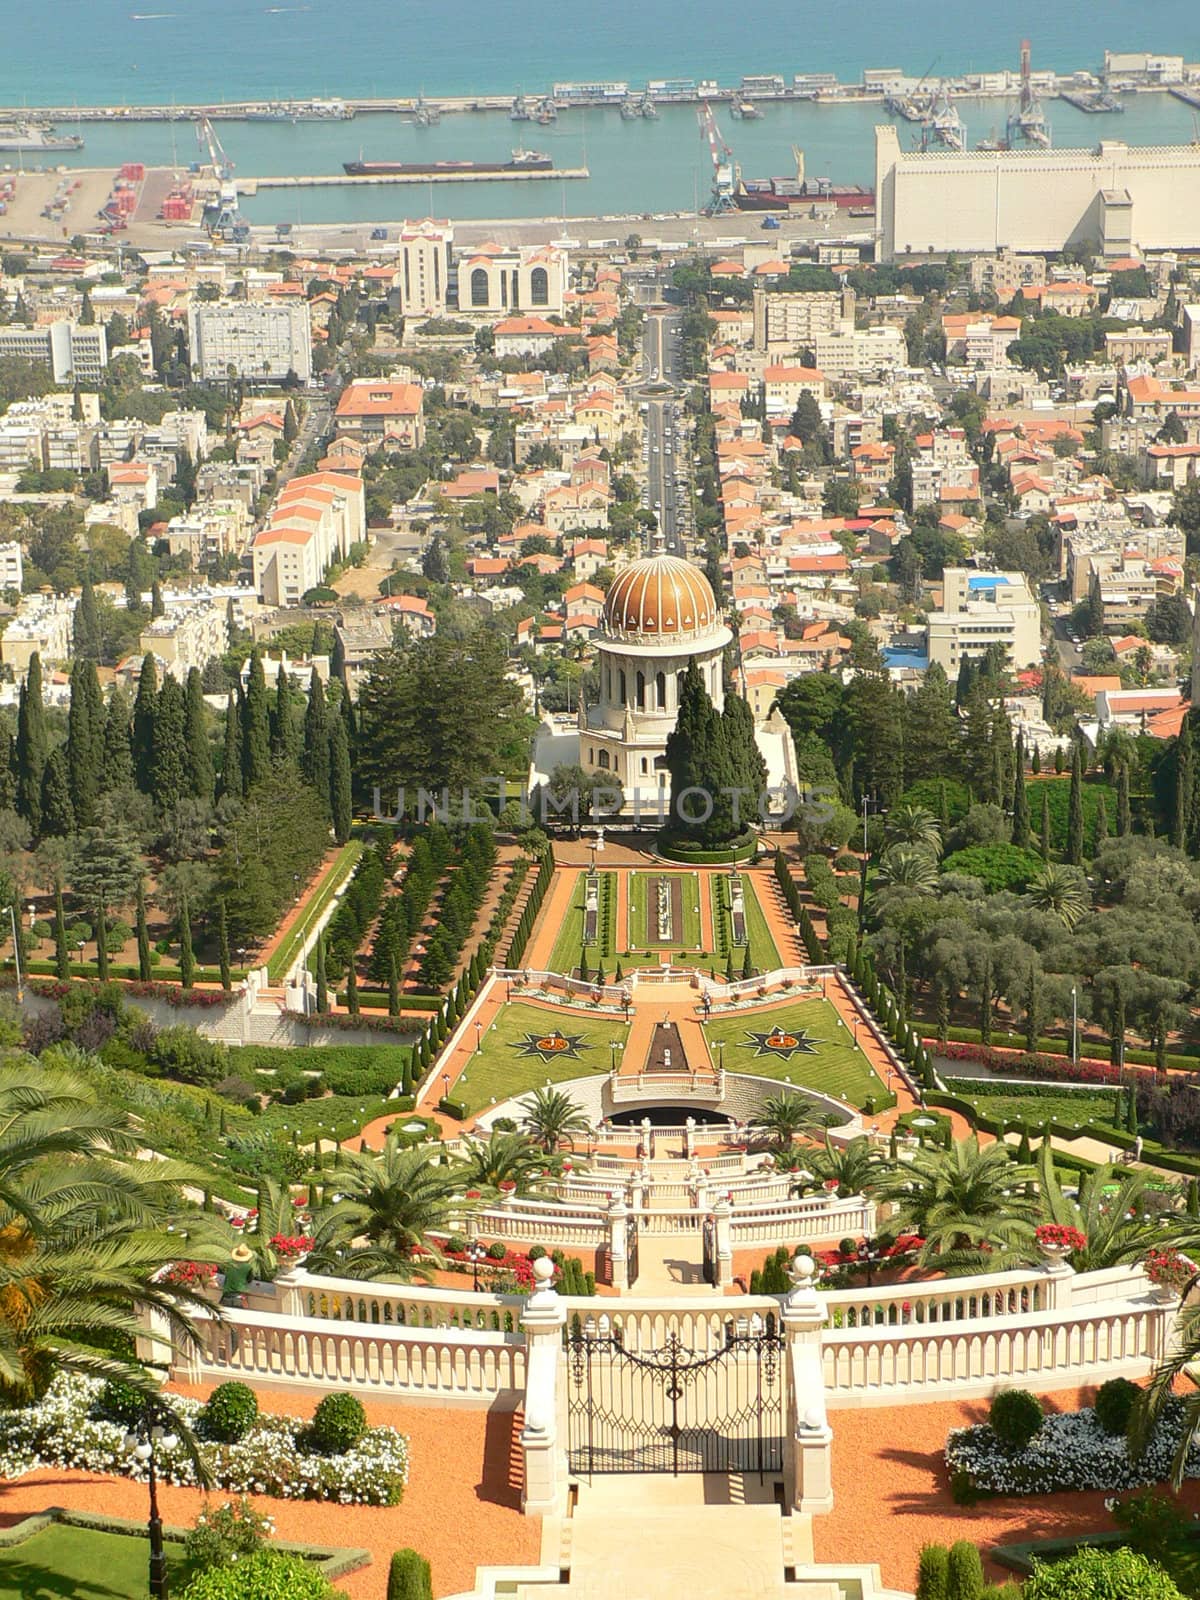 Baha'i Gardens in Haifa